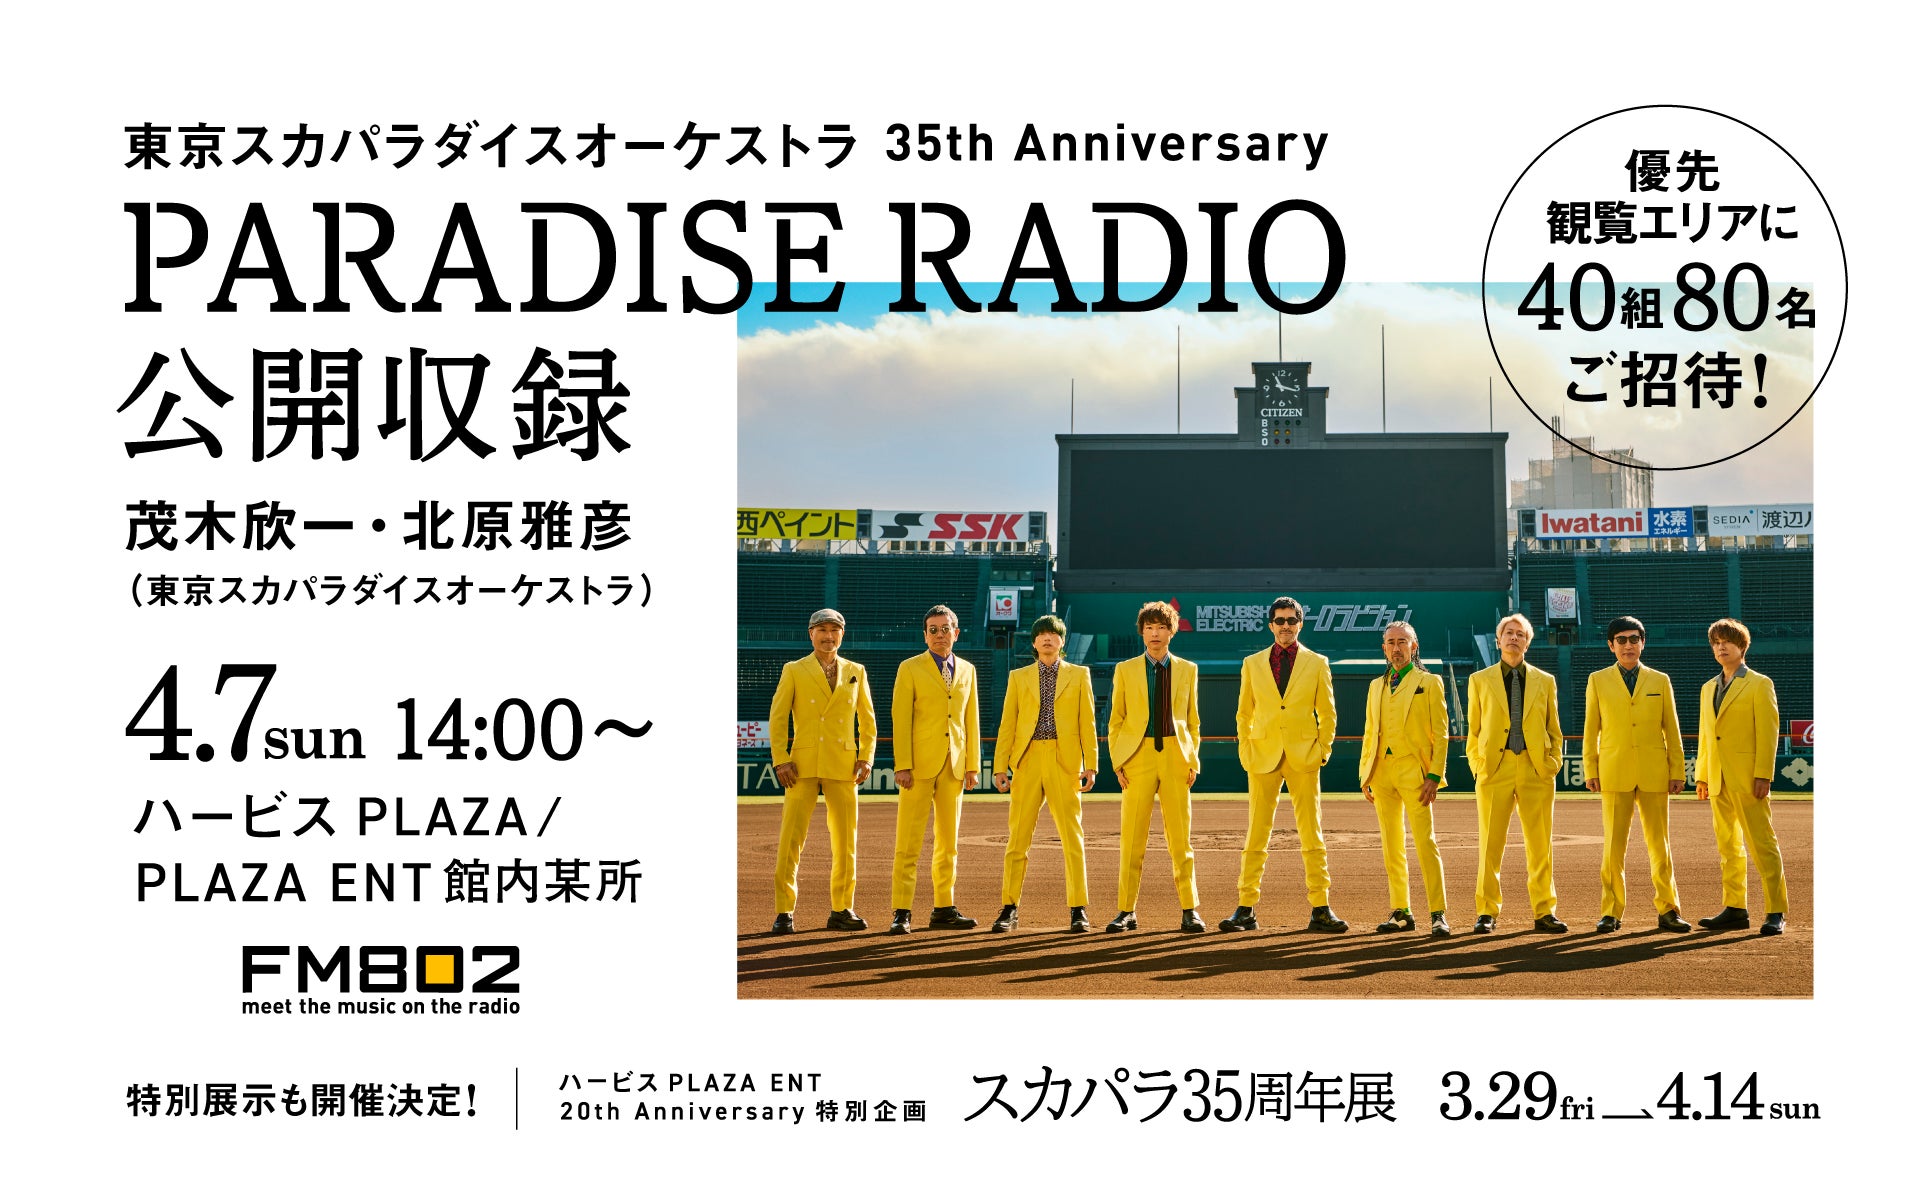 東京スカパラダイスオーケストラ 35th Anniversary PARADISE RADIO 公開収録！FM802リスナー40組80名様招待！